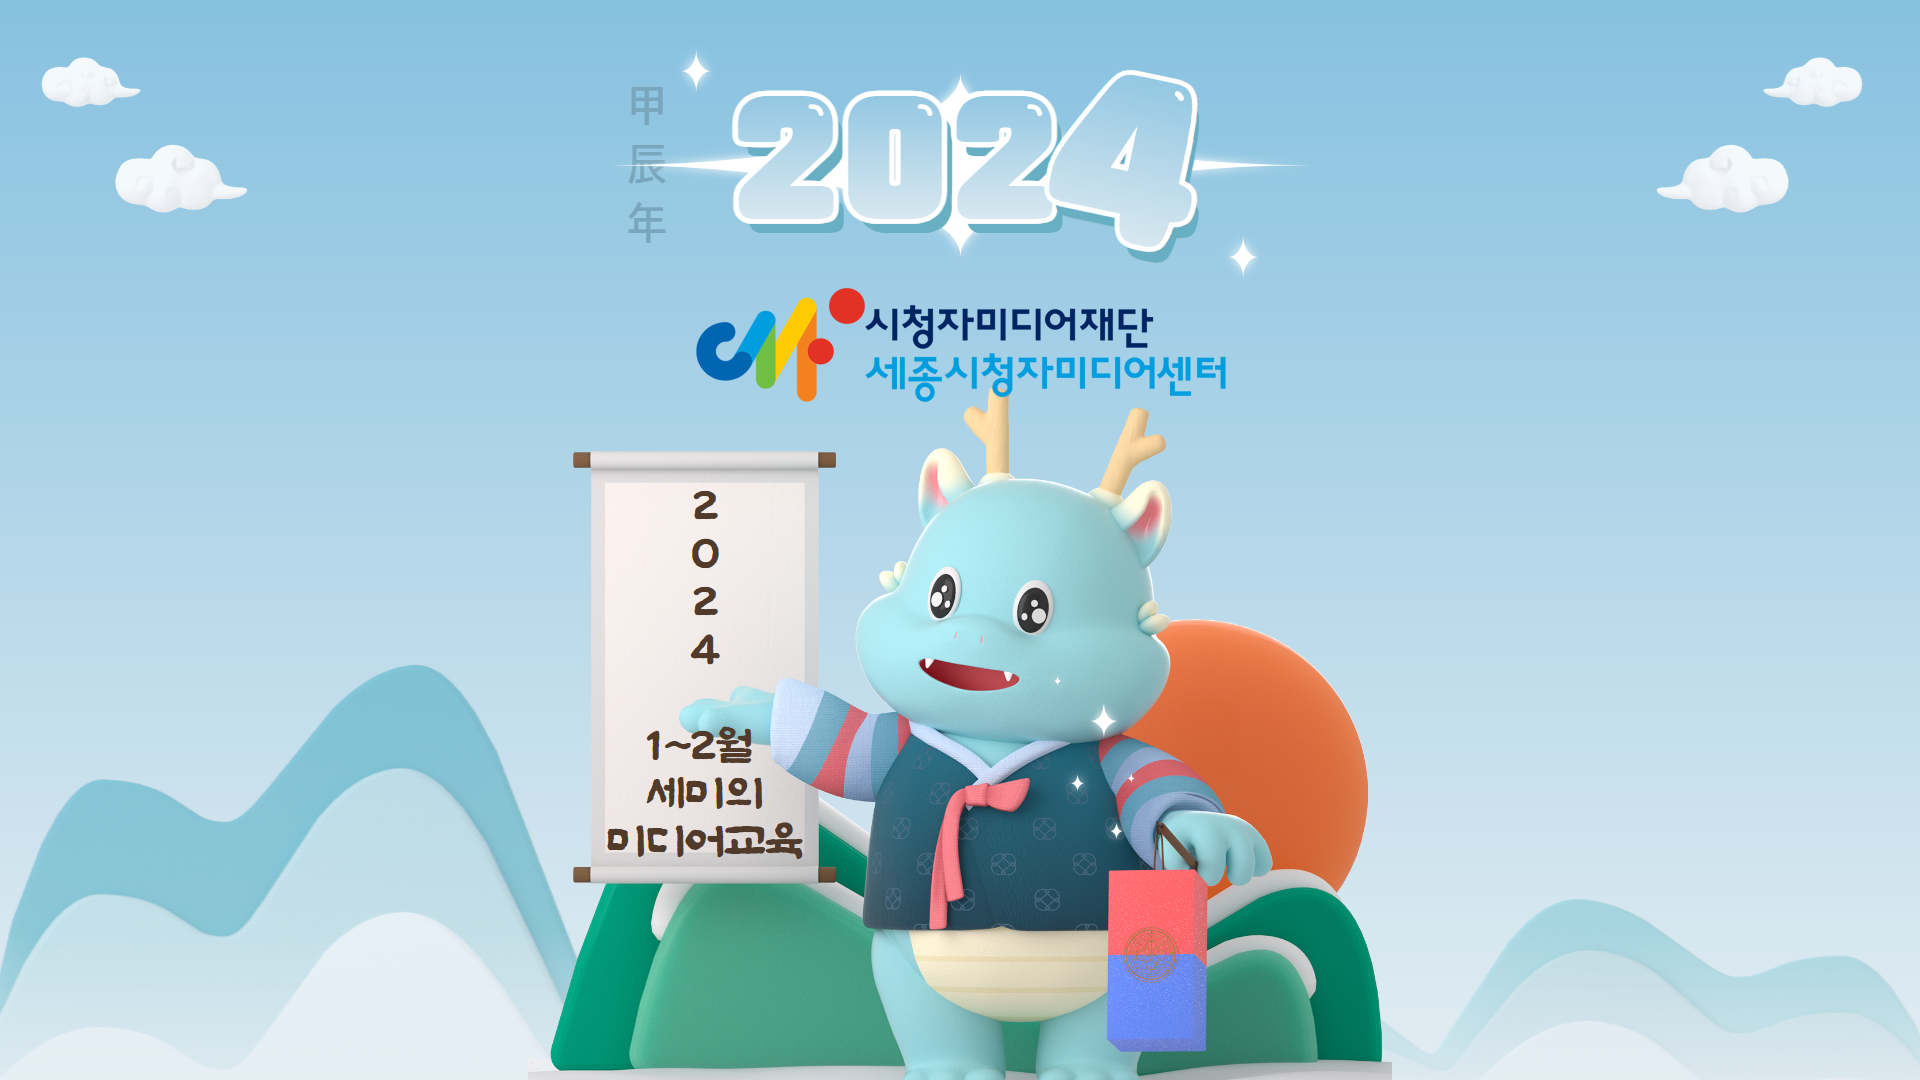 [교육 안내] 2024년 용의 해, 1-2월 세미와 미디어교육으로 시작해용!